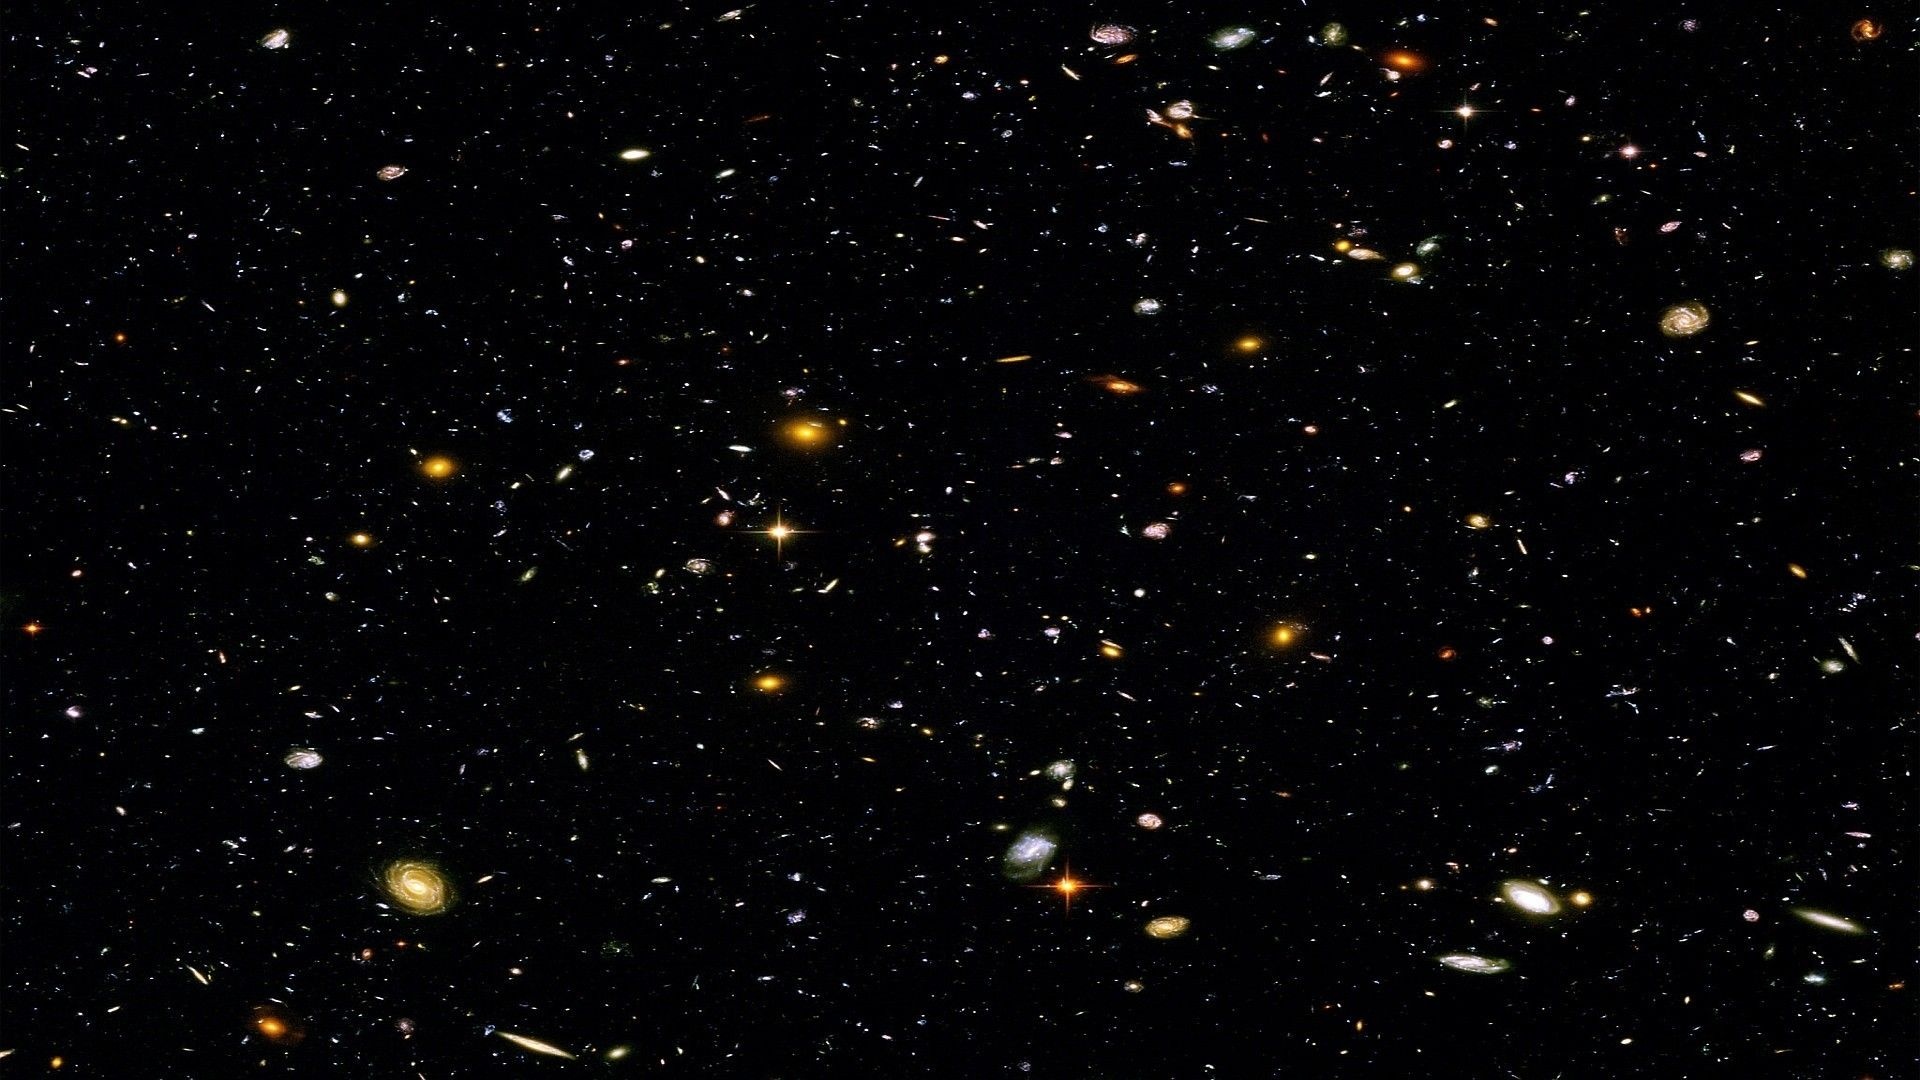 Hubble Deep Field, Deep space exploration, Mesmerizing space wallpaper, 1920x1080 Full HD Desktop